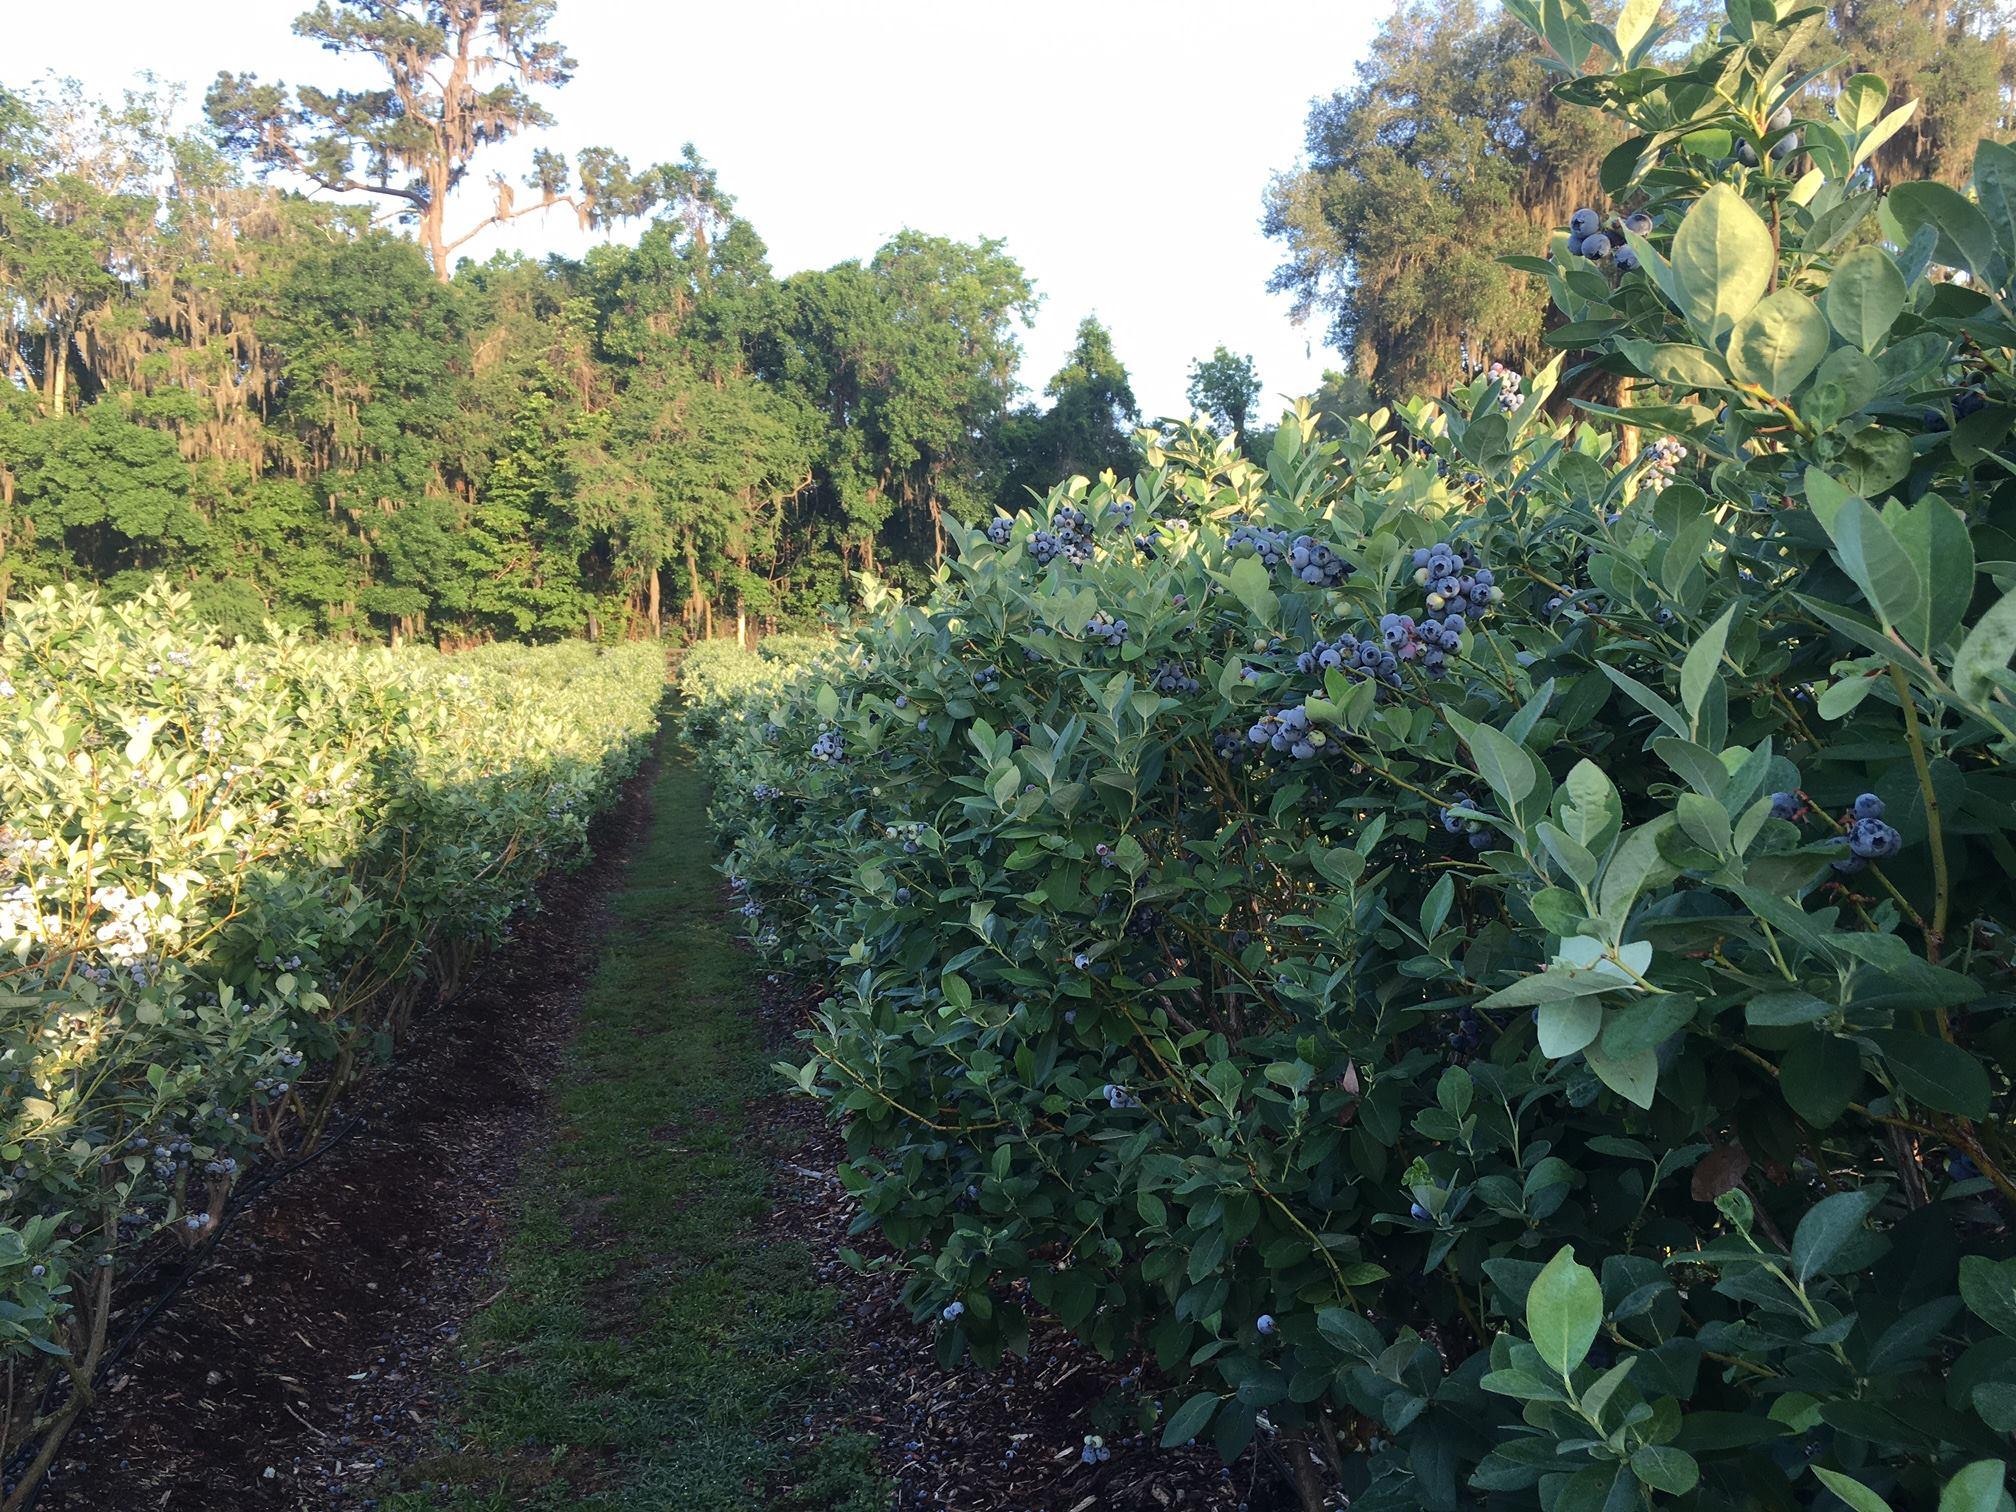 blueberry picking near jacksonville